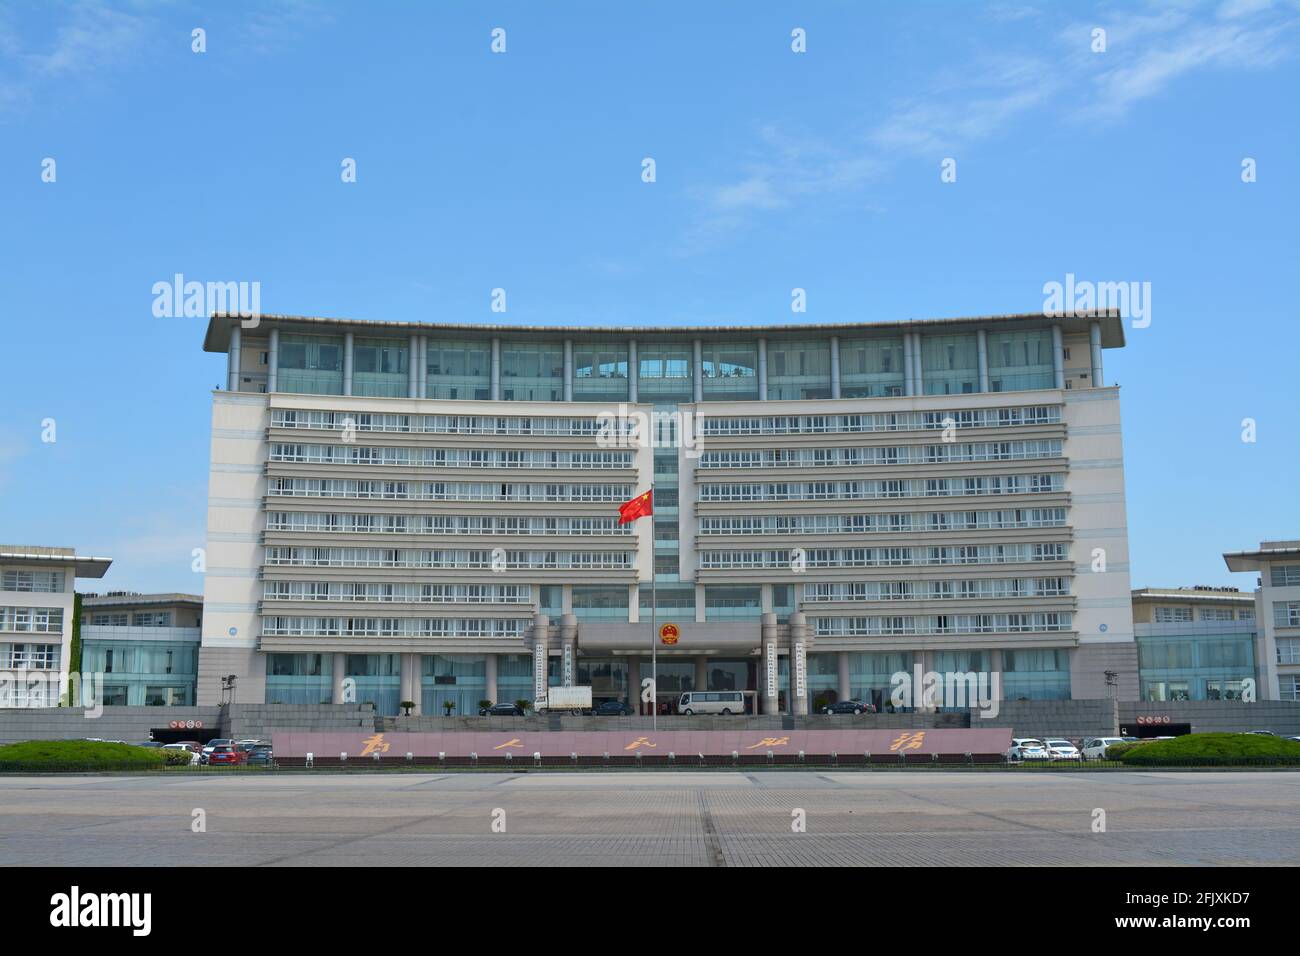 Façade et bâtiment principal du gouvernement populaire de Jiaxing. Bureaux locaux et nationaux. Banque D'Images